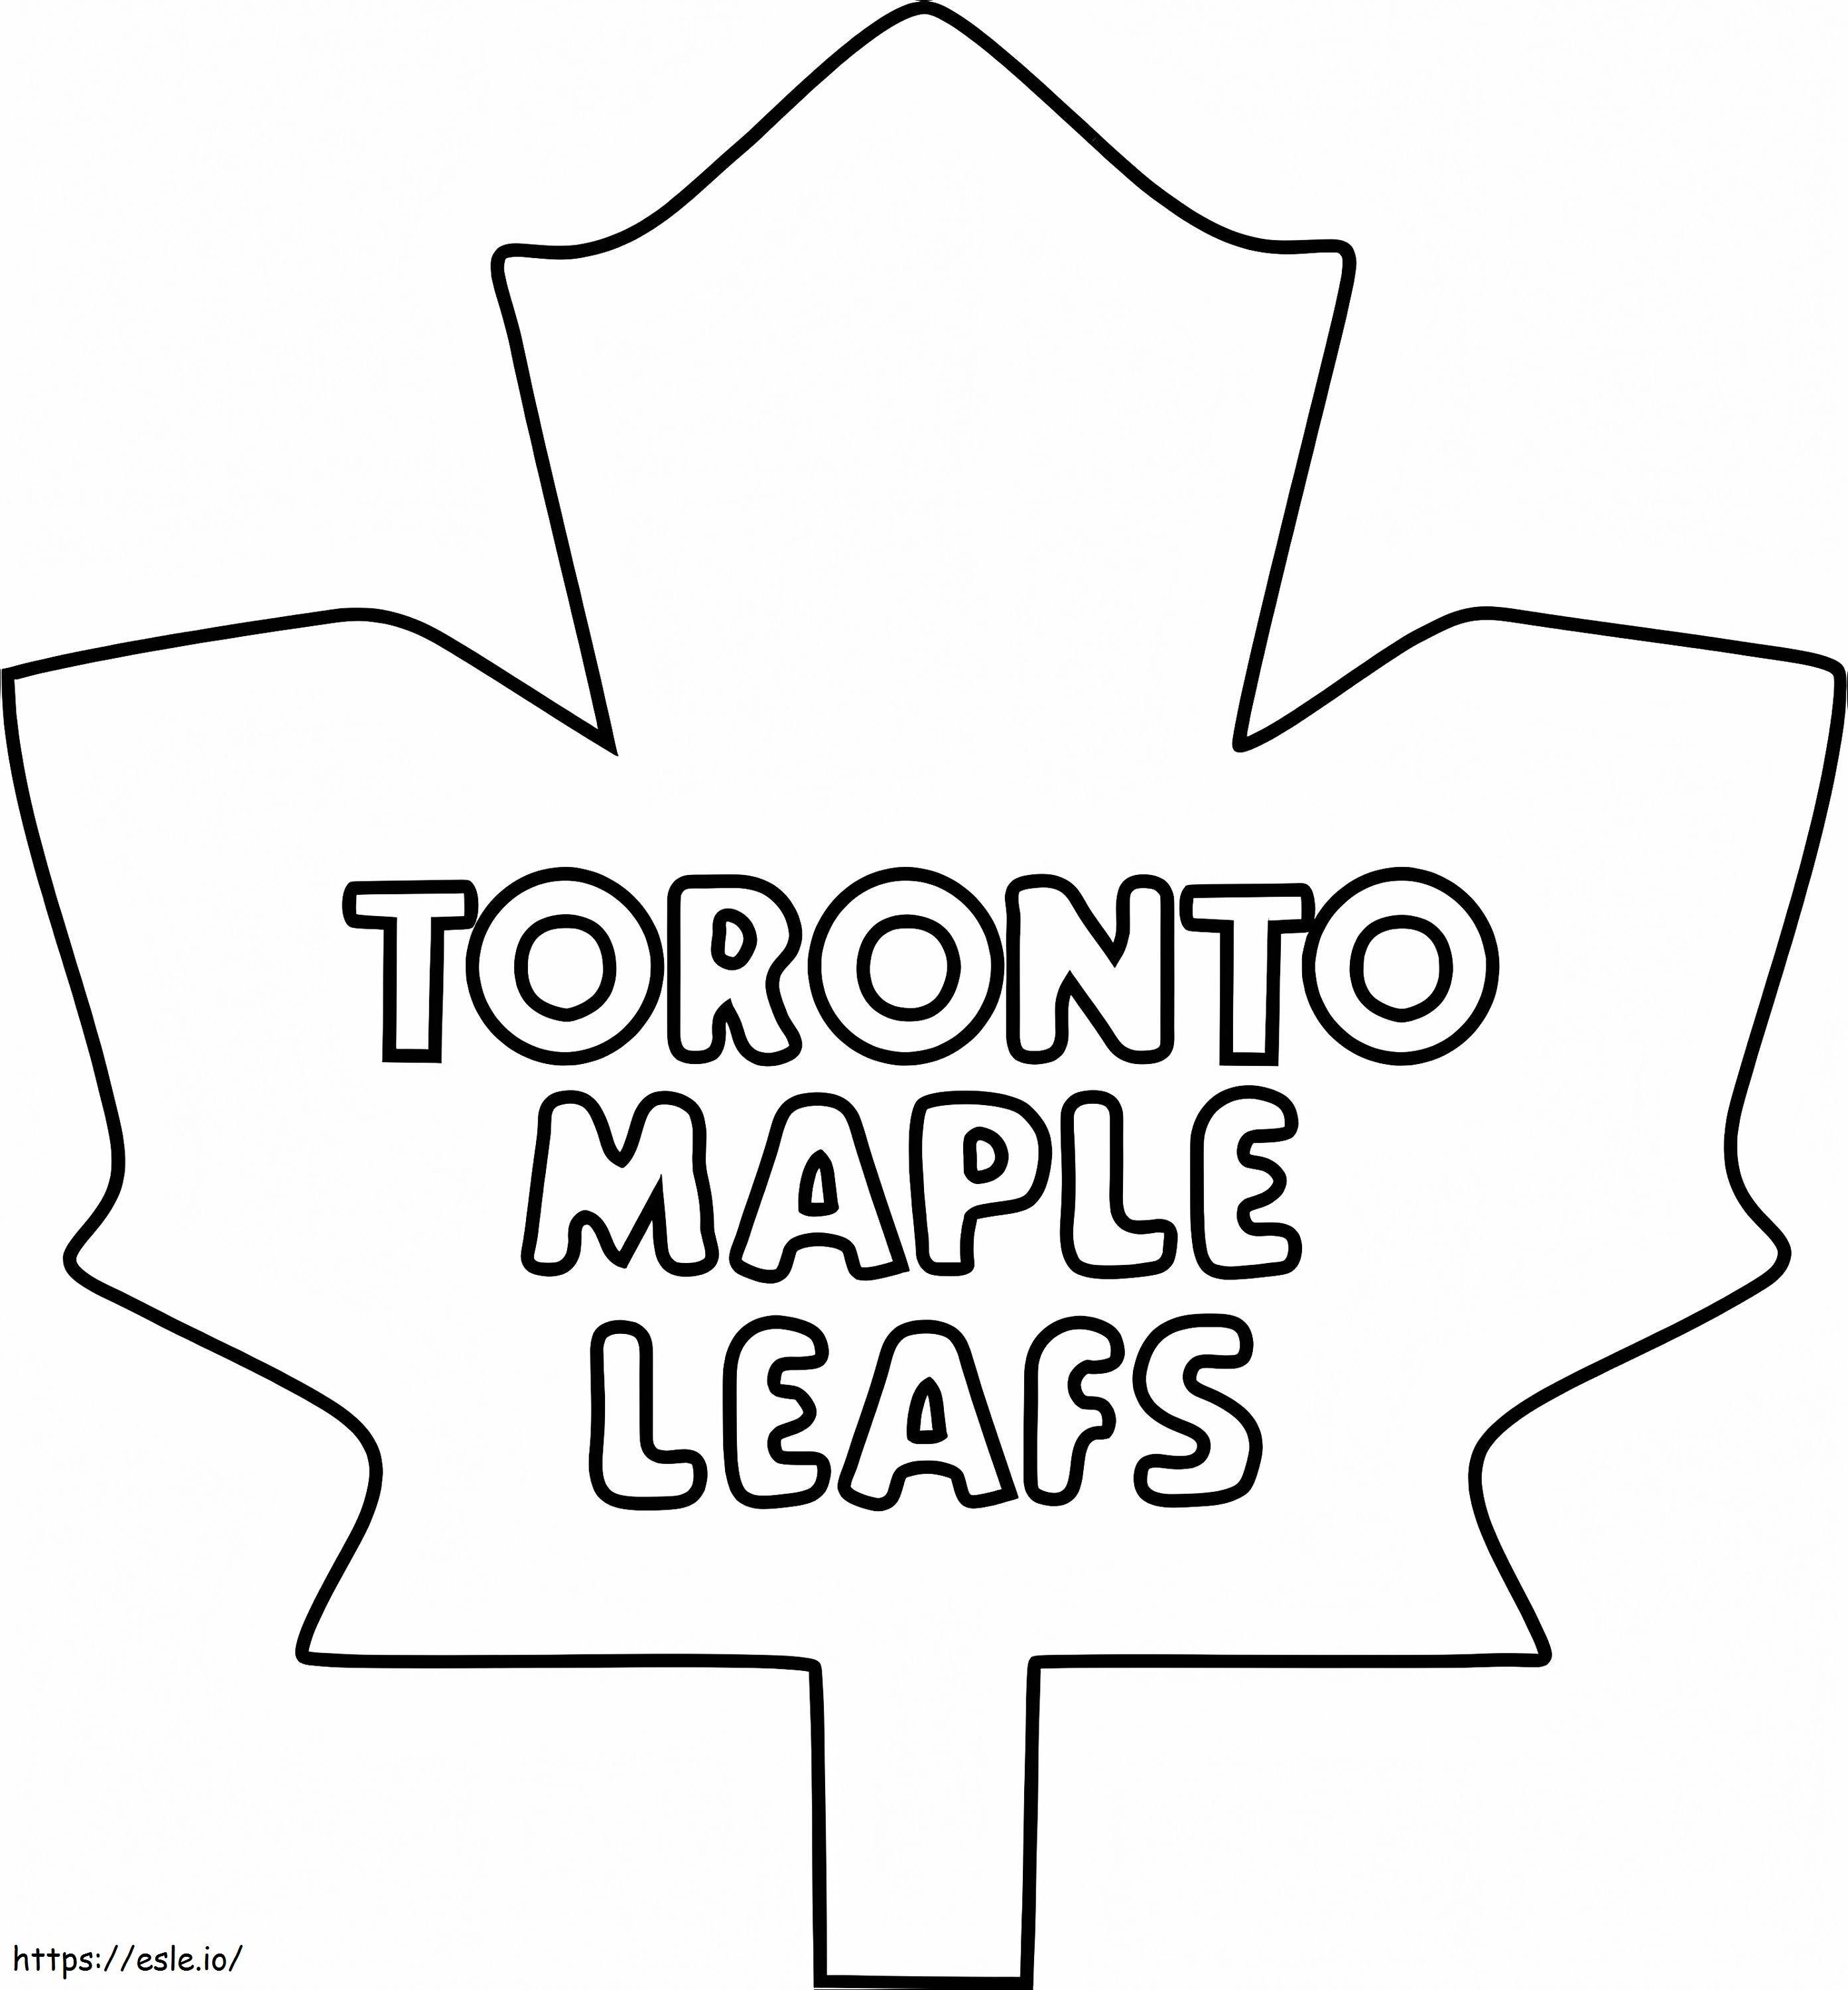 Logo liści klonu Toronto kolorowanka